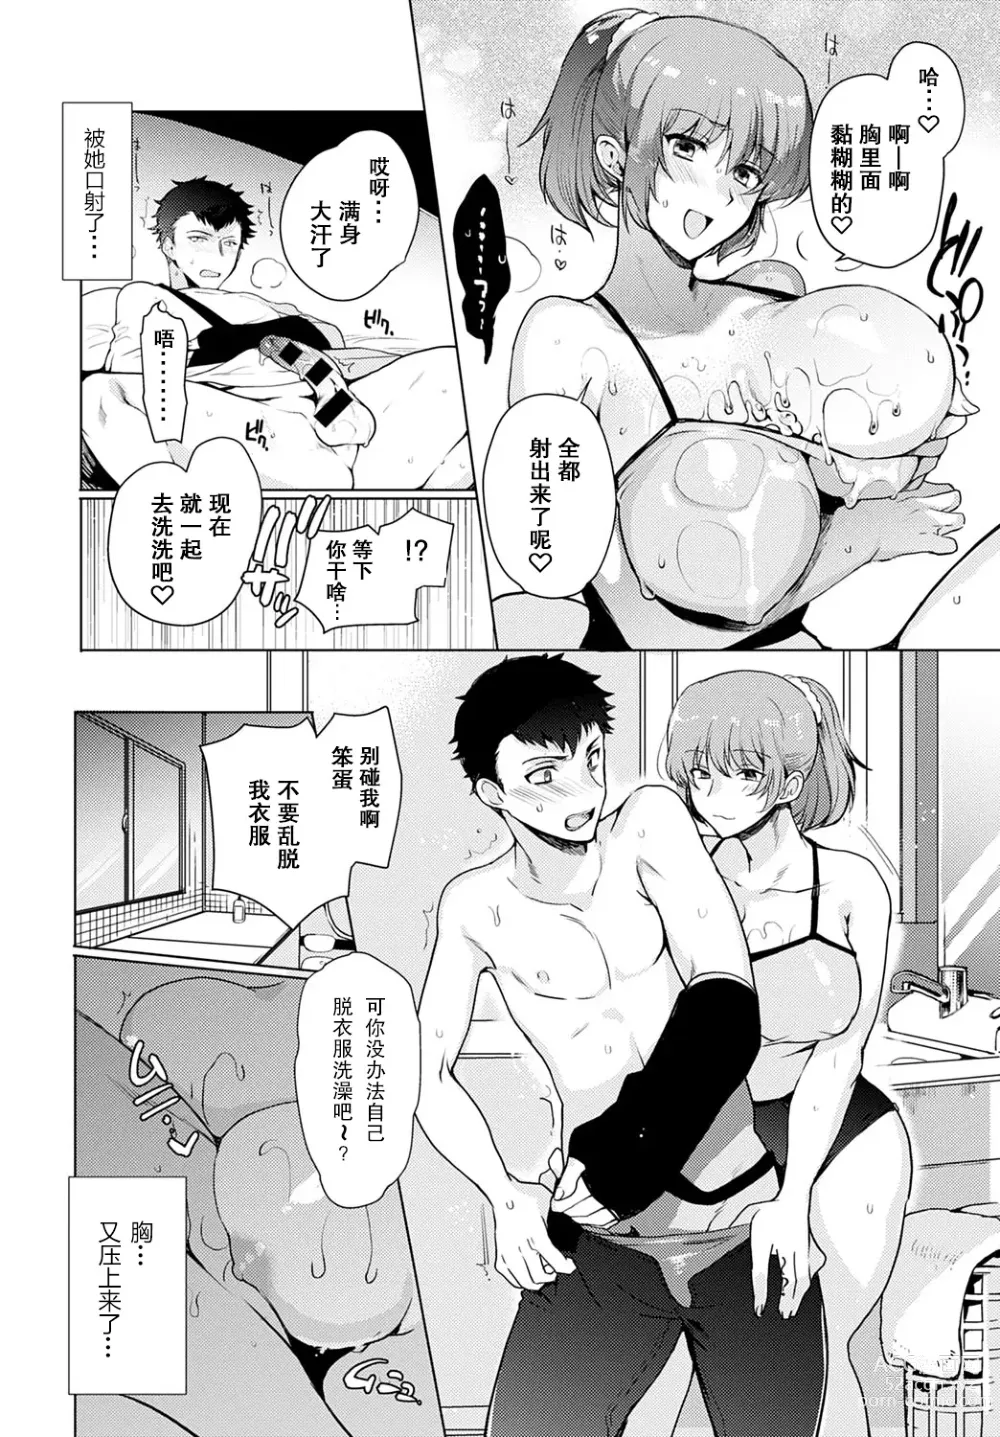 Page 10 of manga Kyoudai Switch Siblings Switch